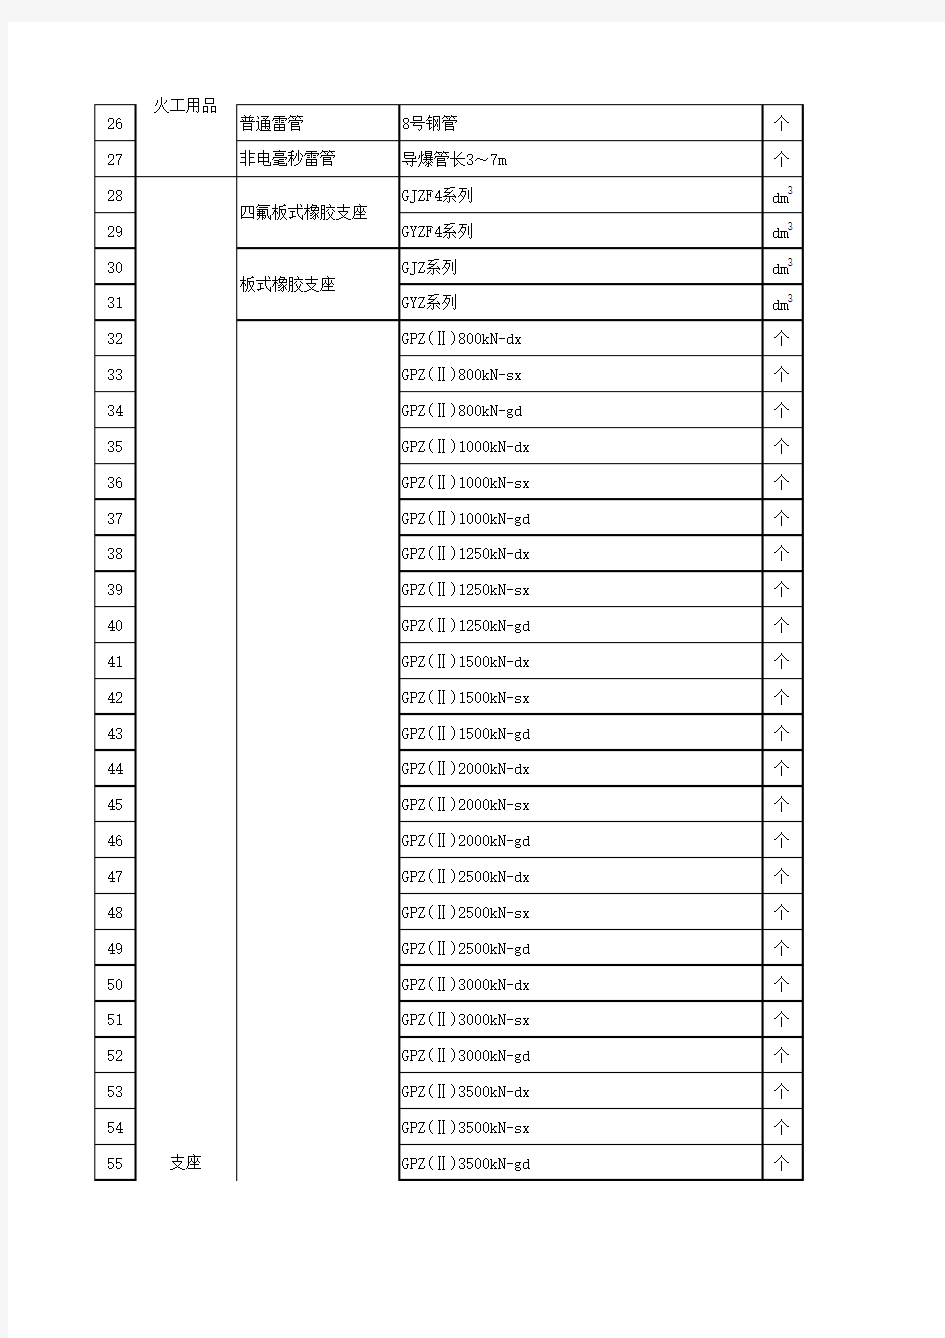 湖北省2011年9月份交通工程主要材料价格信息